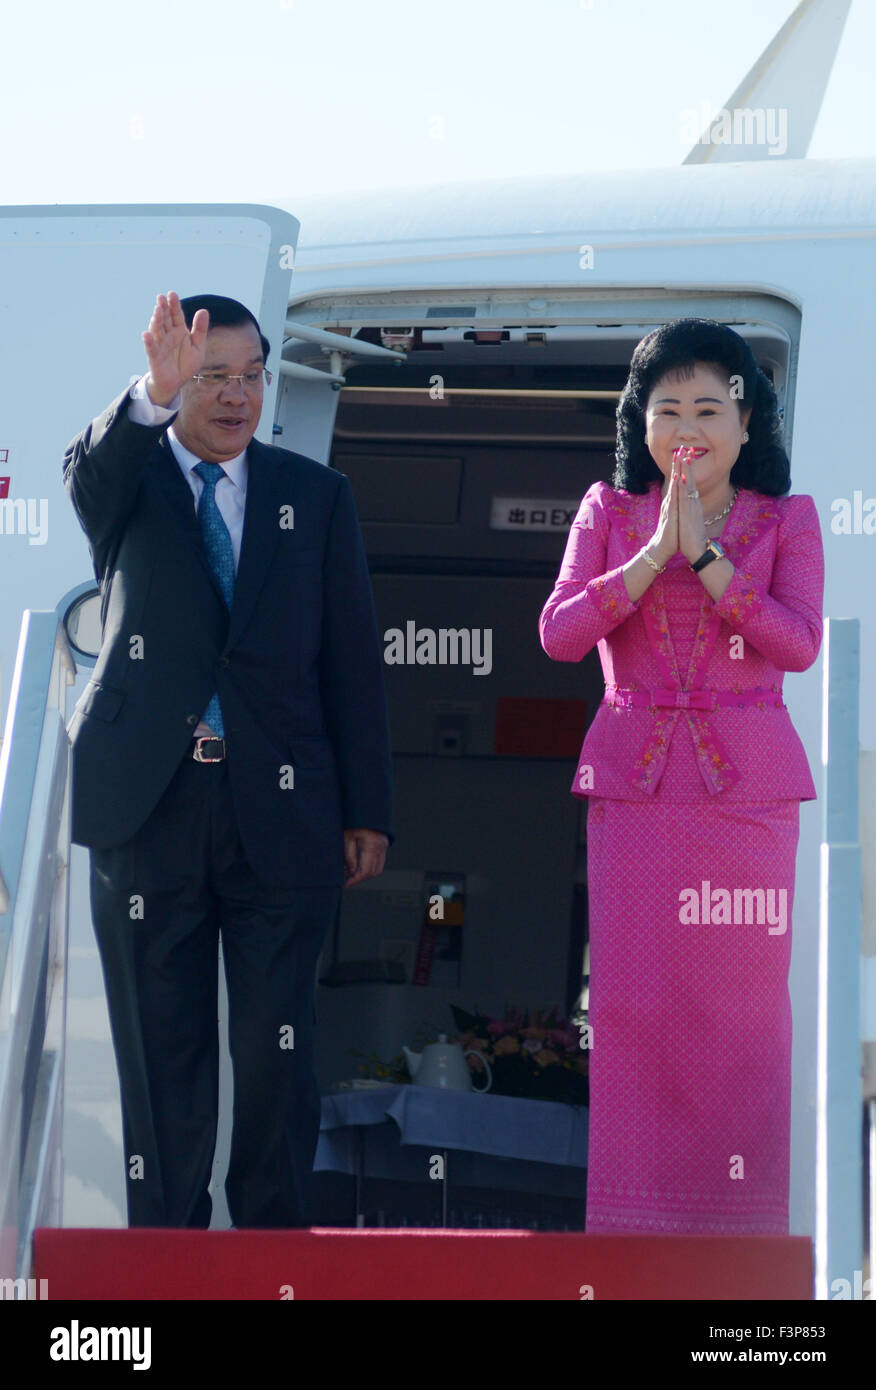 Phnom Penh, Cambodge. Oct 11, 2015. Le Premier ministre cambodgien Hun Sen (L) et son épouse Bun Rany geste de l'avion avant leur départ à Phnom Penh, capitale du Cambodge, 11 octobre 2015. Hun Sen a quitté Phnom Penh le dimanche pour une série de réunions internationales en Chine, Macao et Pékin qui se tiendra du 12 au 17 octobre, un haut fonctionnaire a dit. Credit : Sovannara/Xinhua/Alamy Live News Banque D'Images